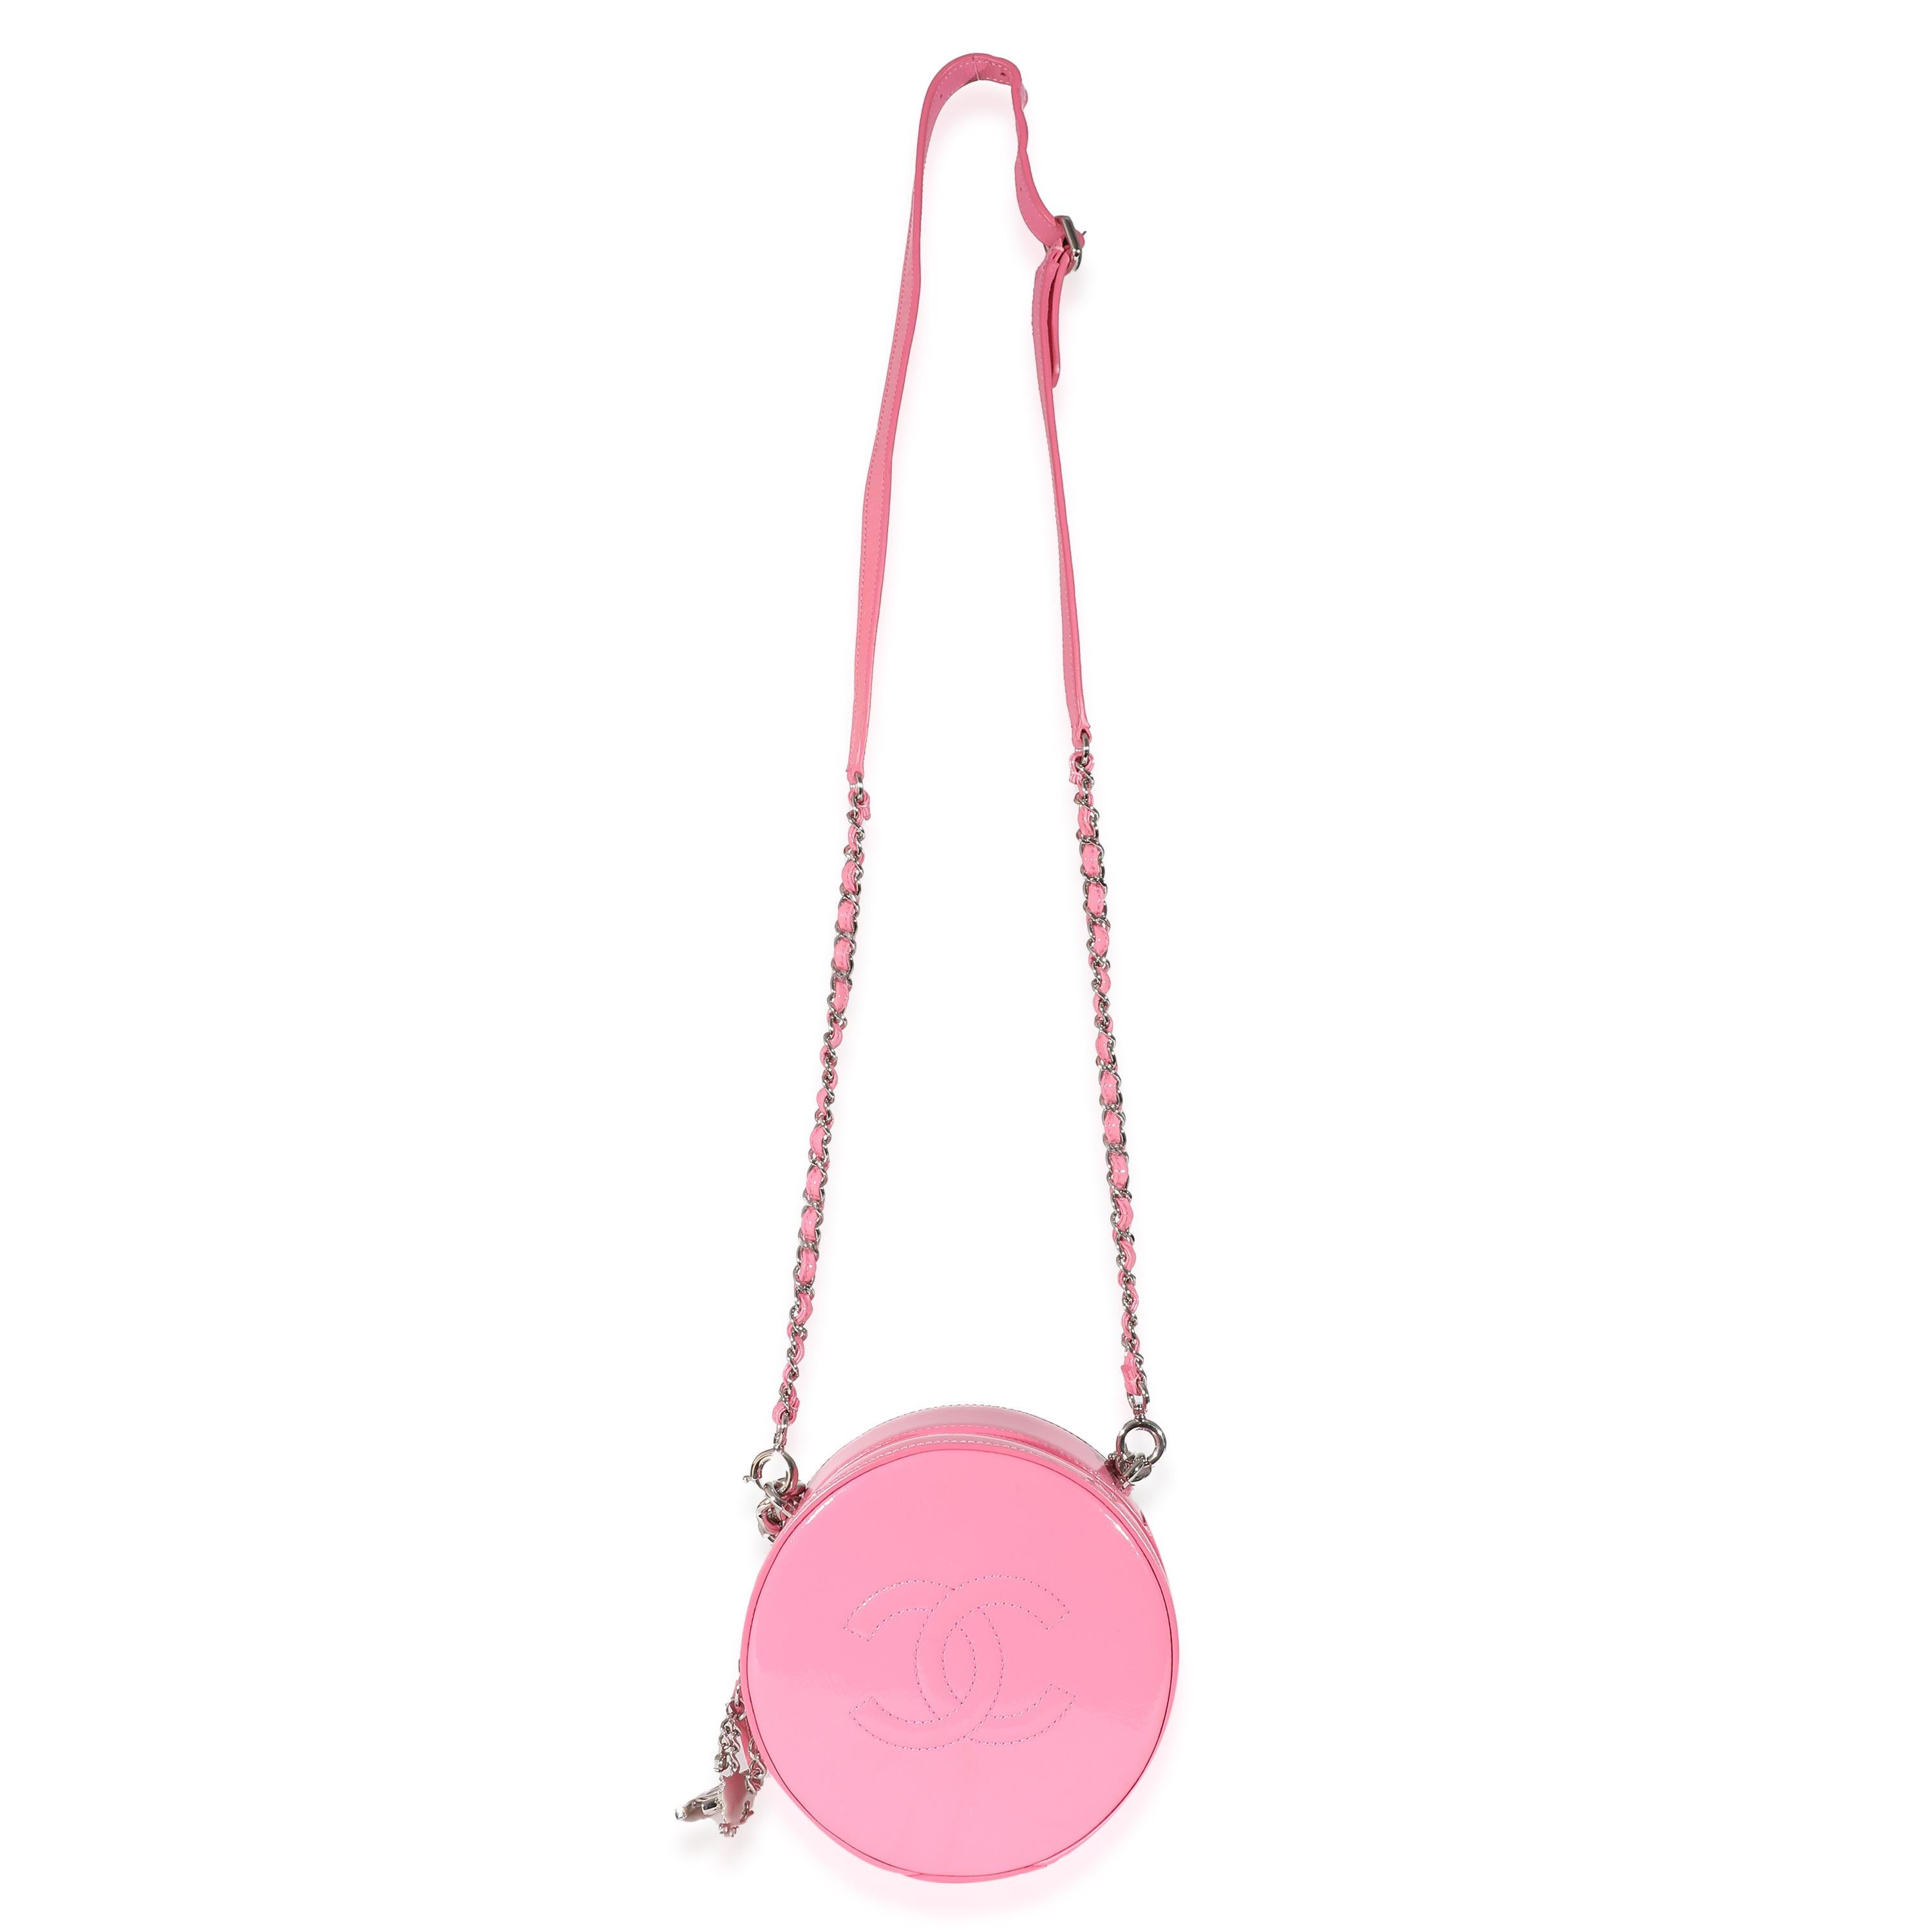 Titre de la liste : Chanel Pink Patent CC Round As Earth Bag
SKU : 135584
Condit : Usagé 
Condition du sac à main : Excellent
Commentaires sur l'état : L'article est en excellent état et présente de légers signes d'usure. Légères éraflures sur la